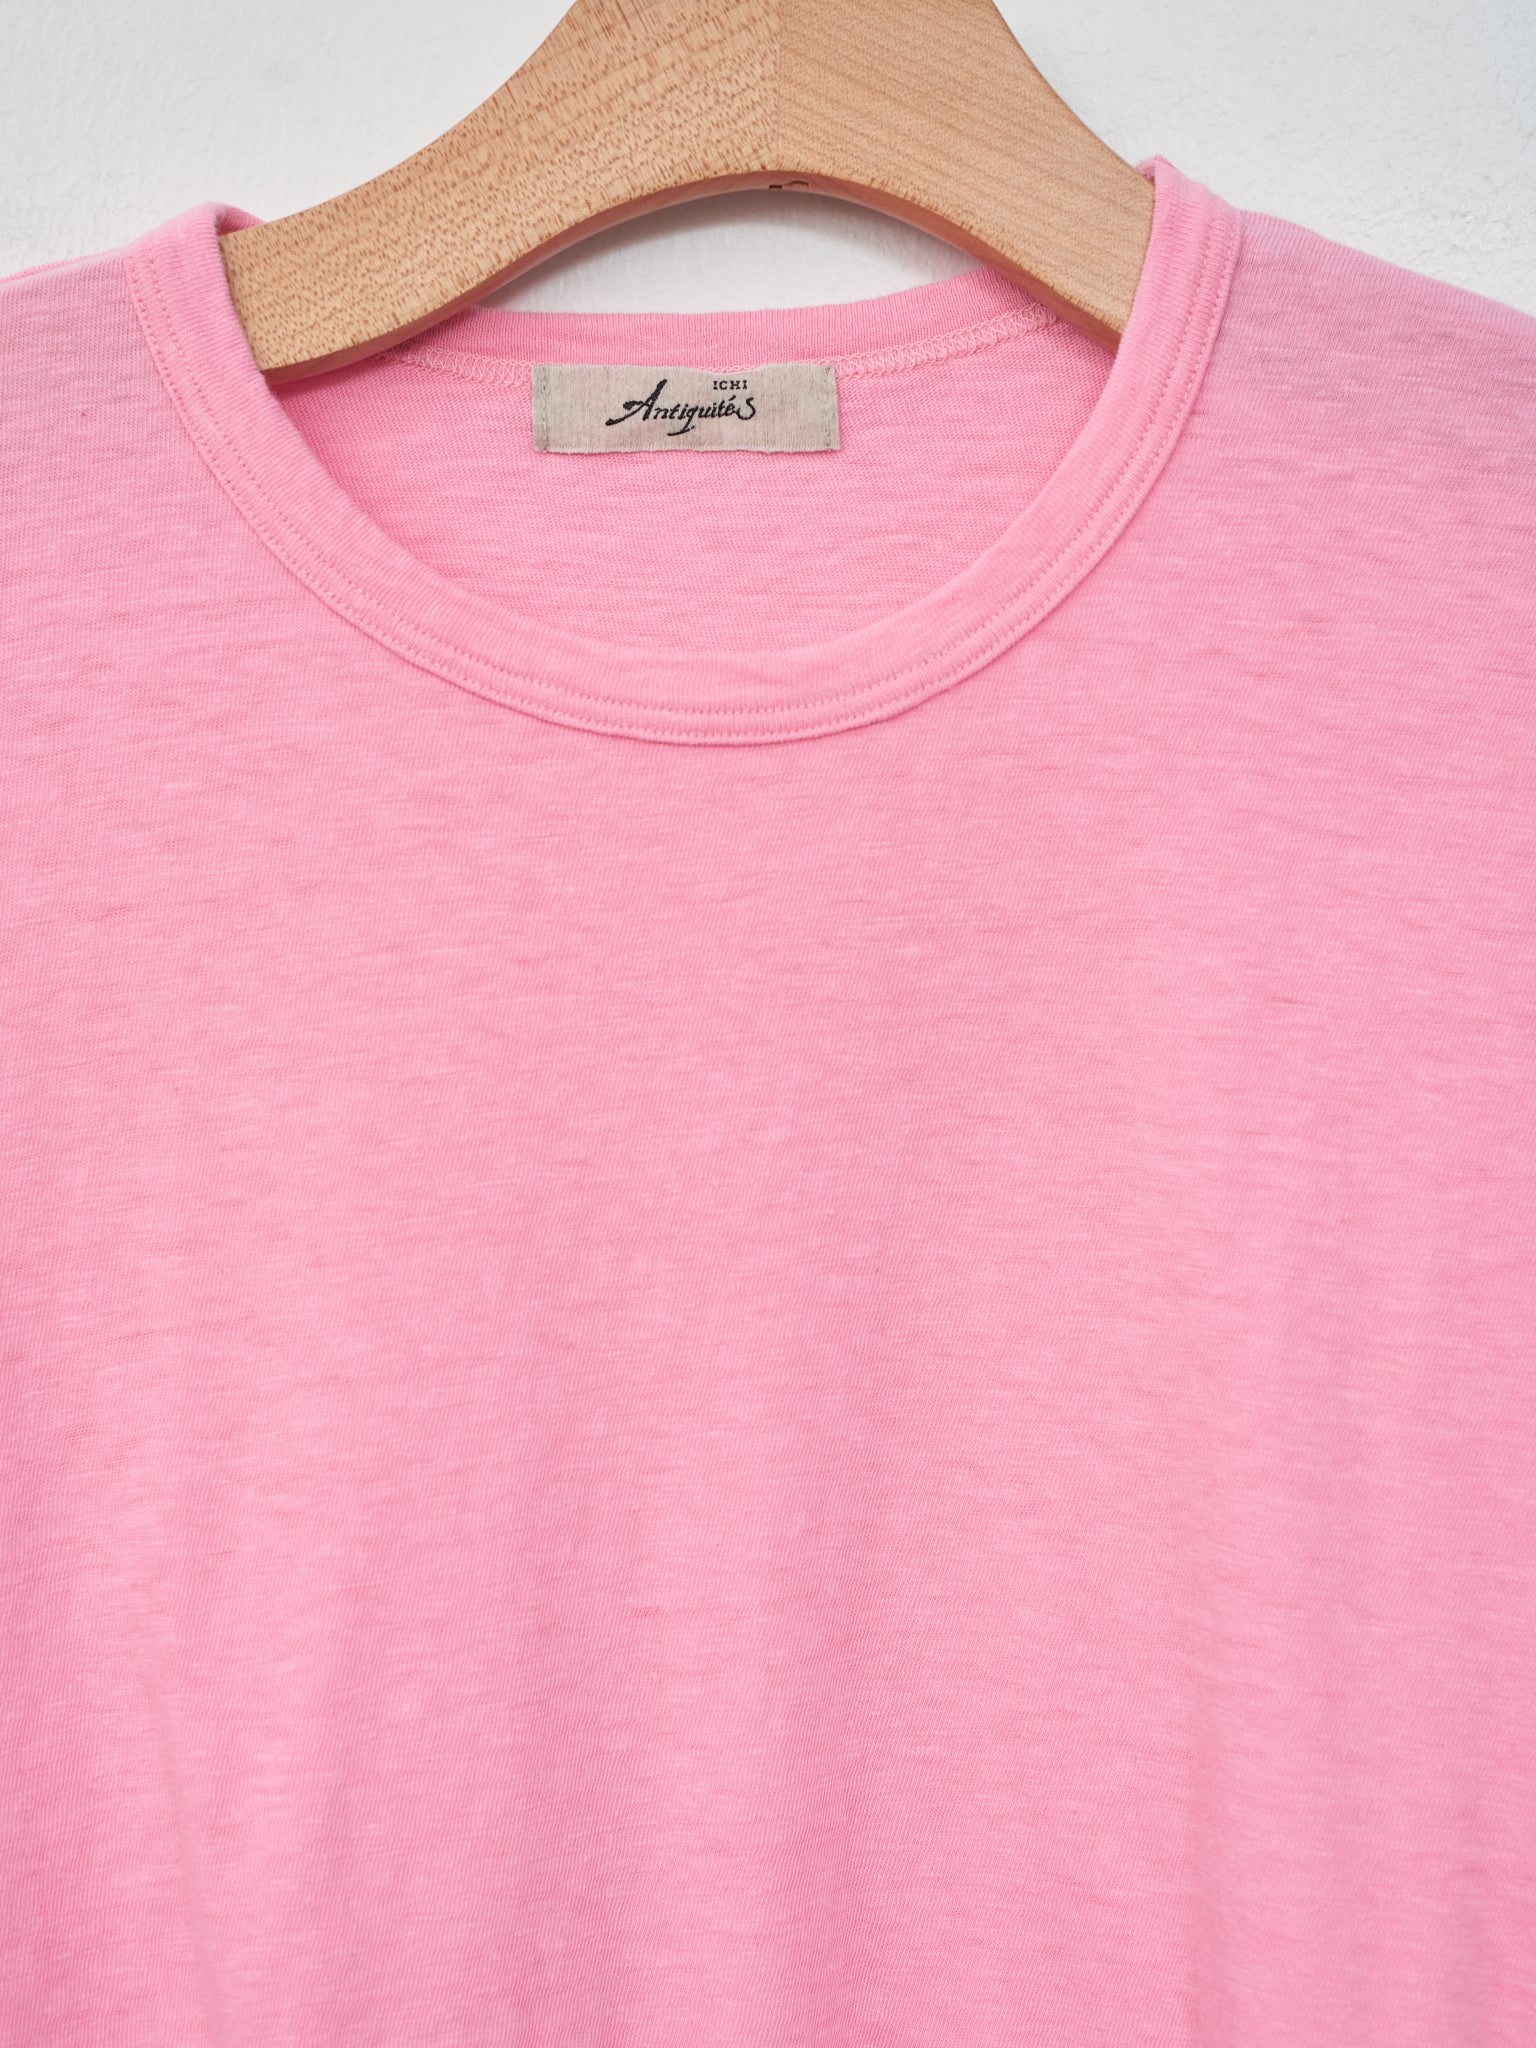 Namu Shop - Ichi T-Shirt - Pink